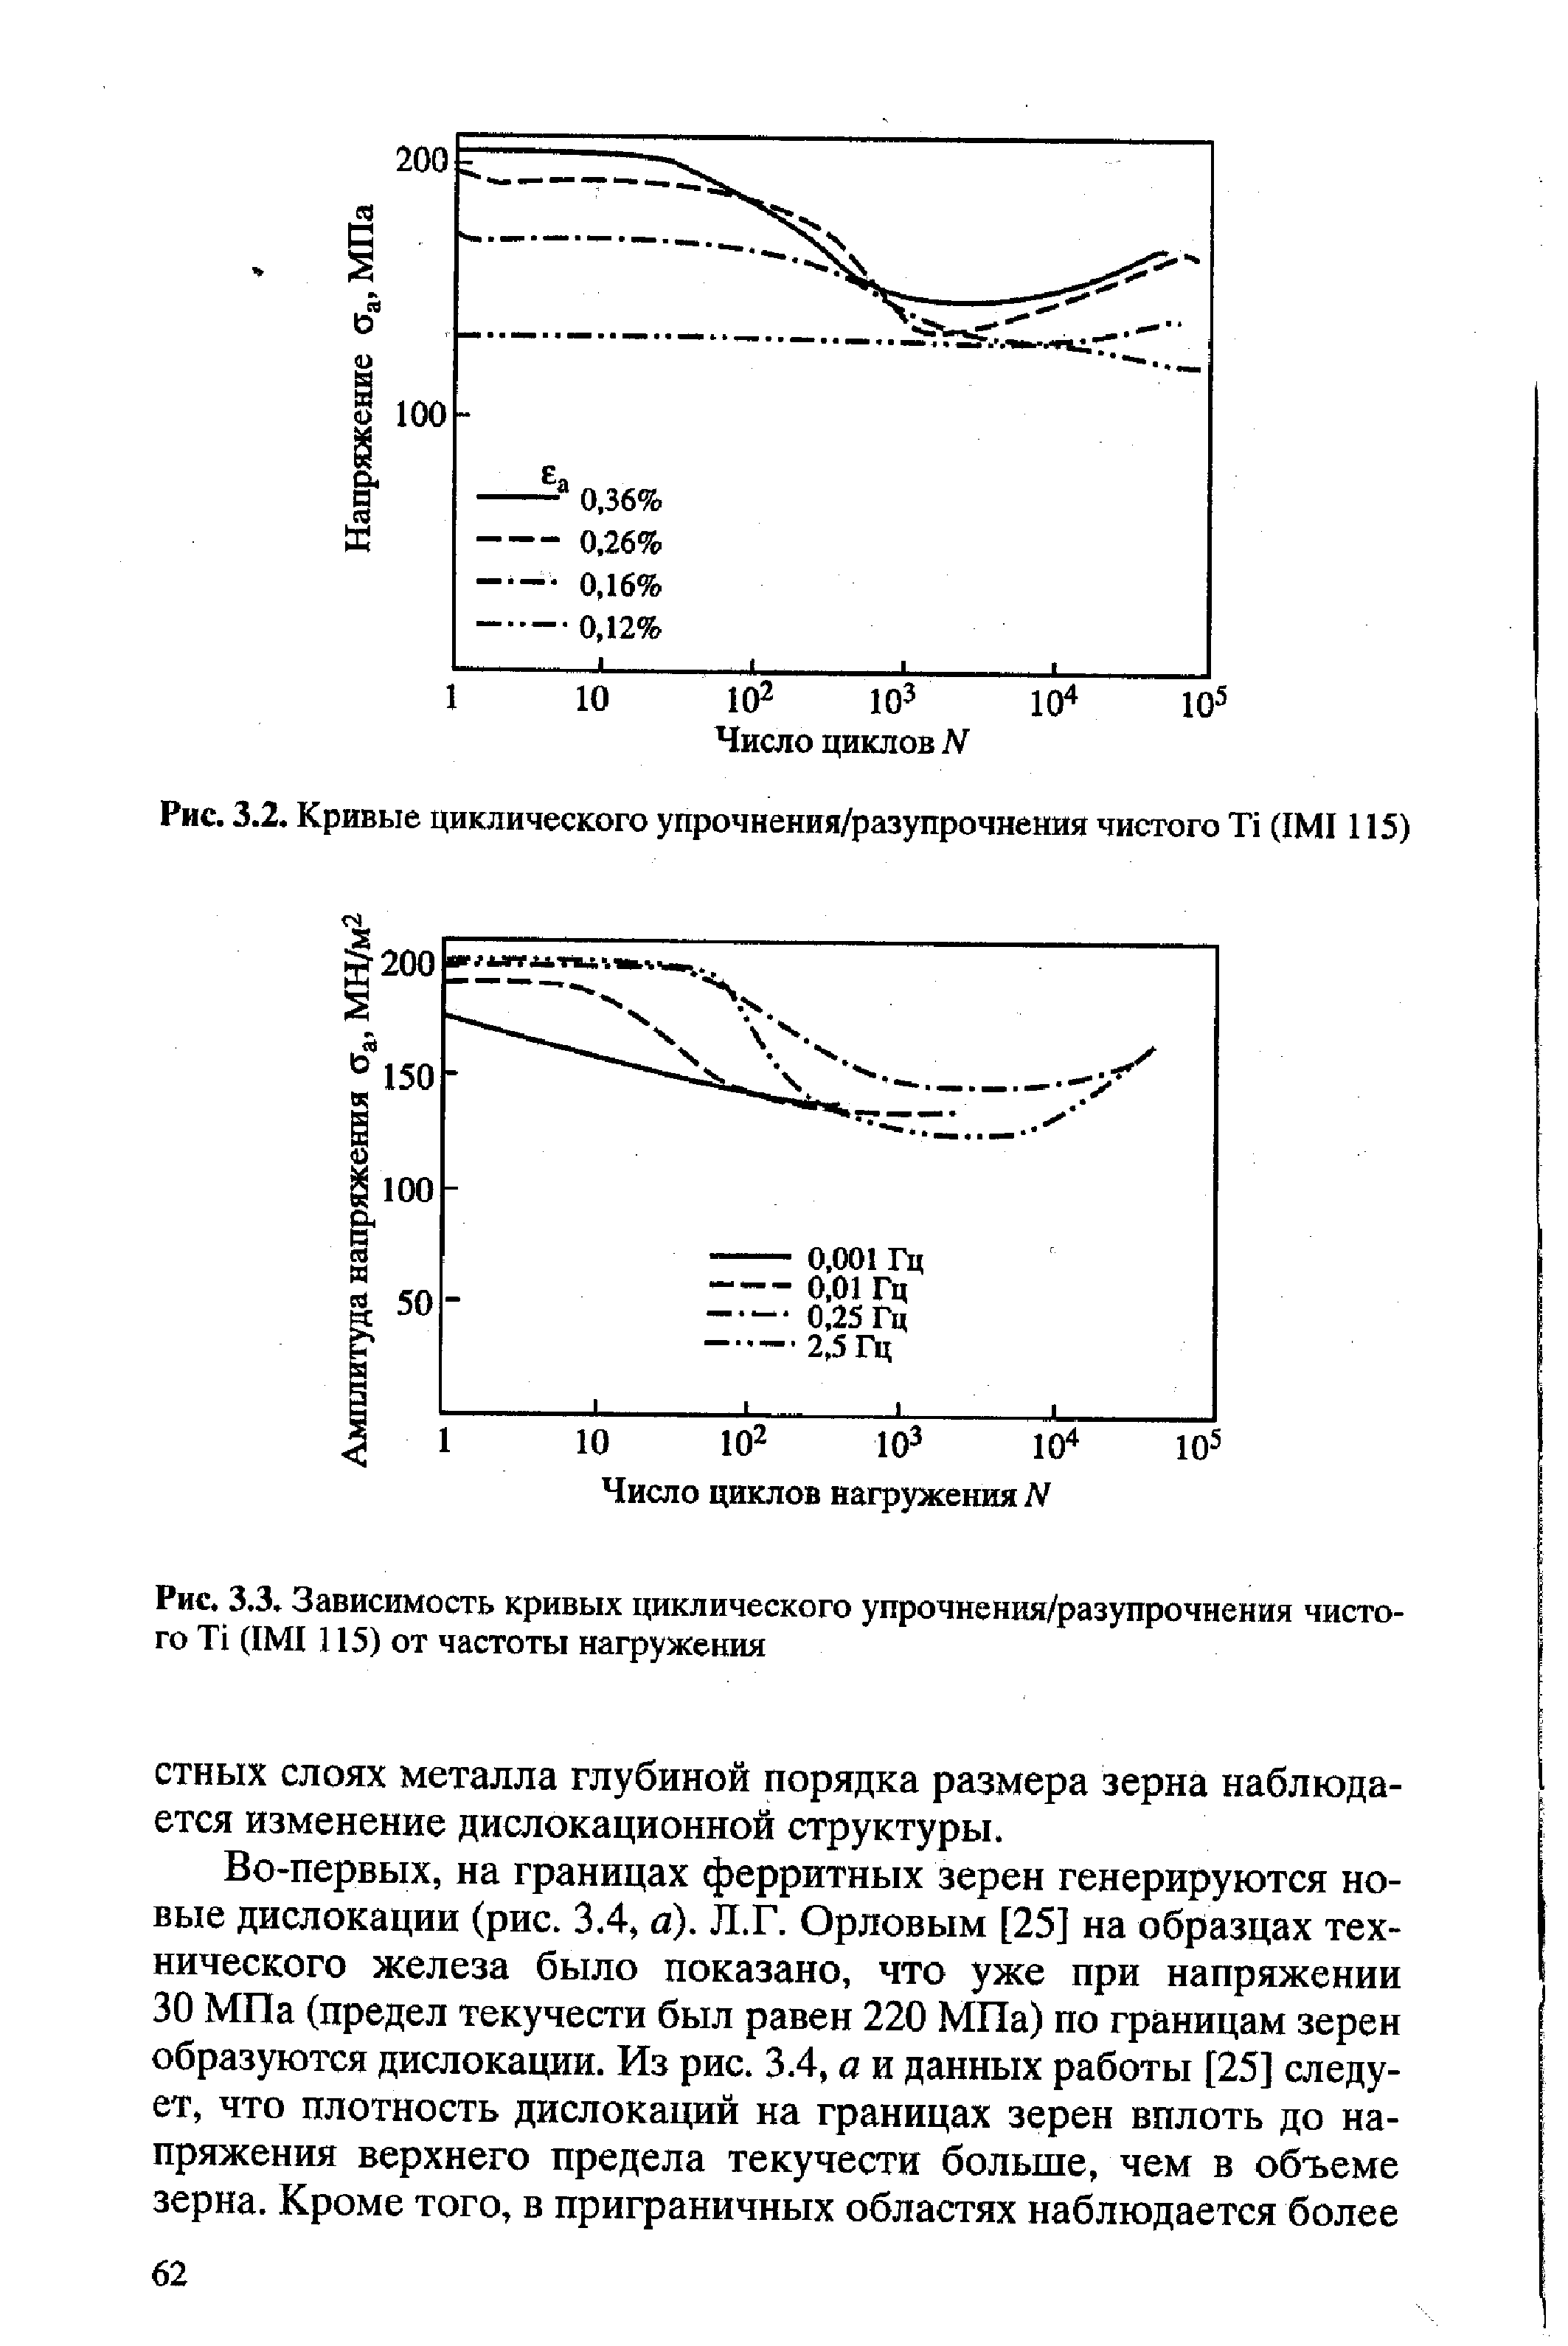 Рис. 3.2. Кривые циклического упрочнения/разупрочнения чистого (1М1115)
